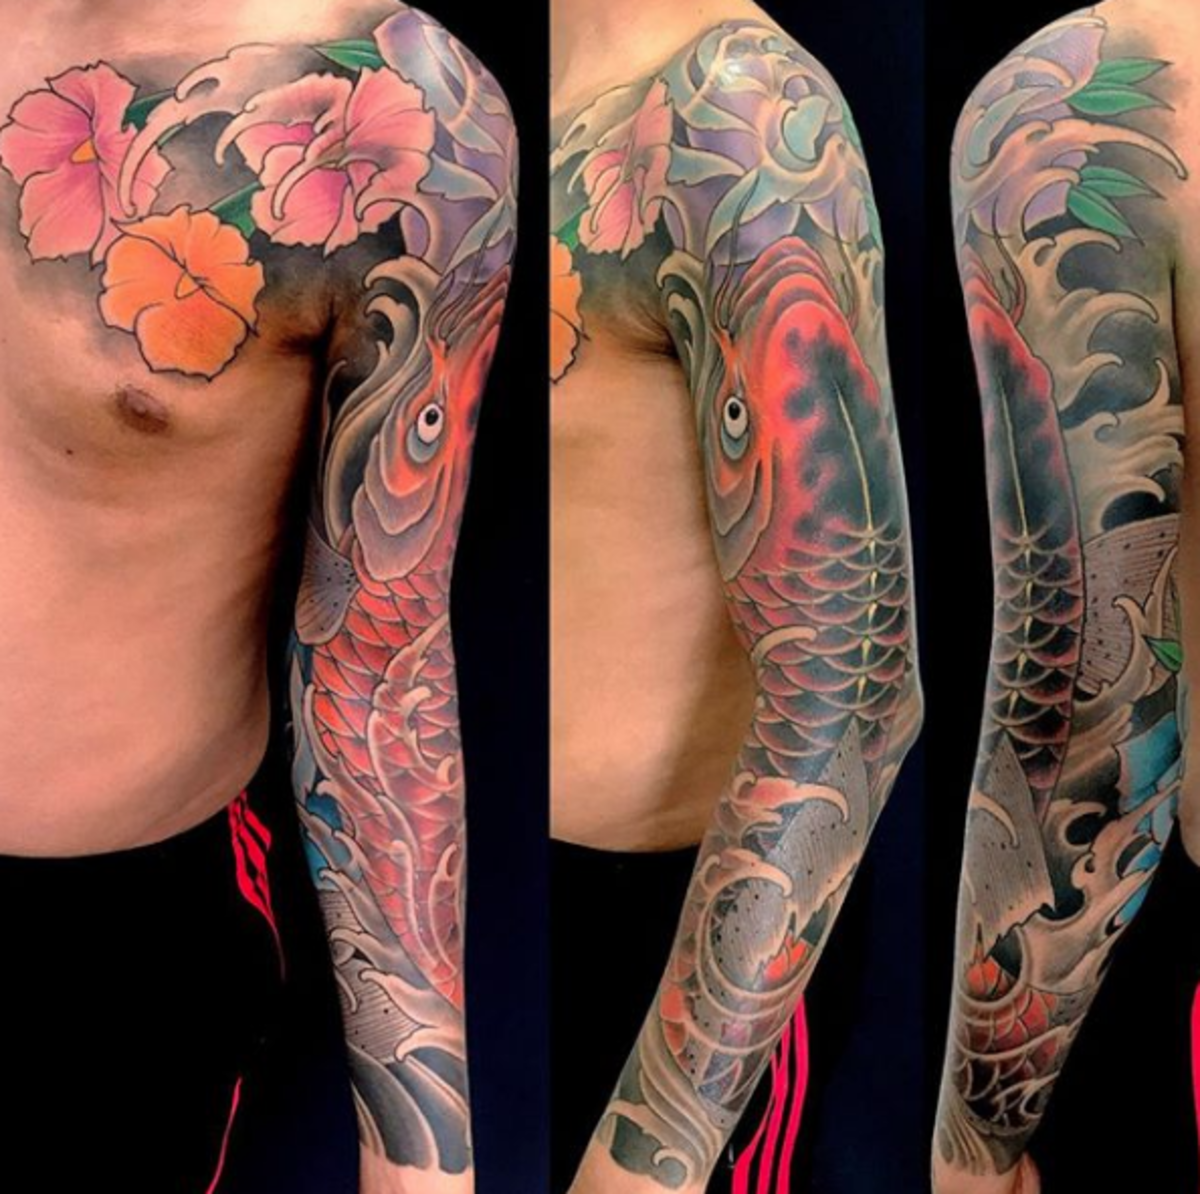 tatuointi, tatuoija, tatuointisuunnittelu, tatuointiinspiraatio, tatuointitaide, japanilainen tatuointi, muste, inkedmag